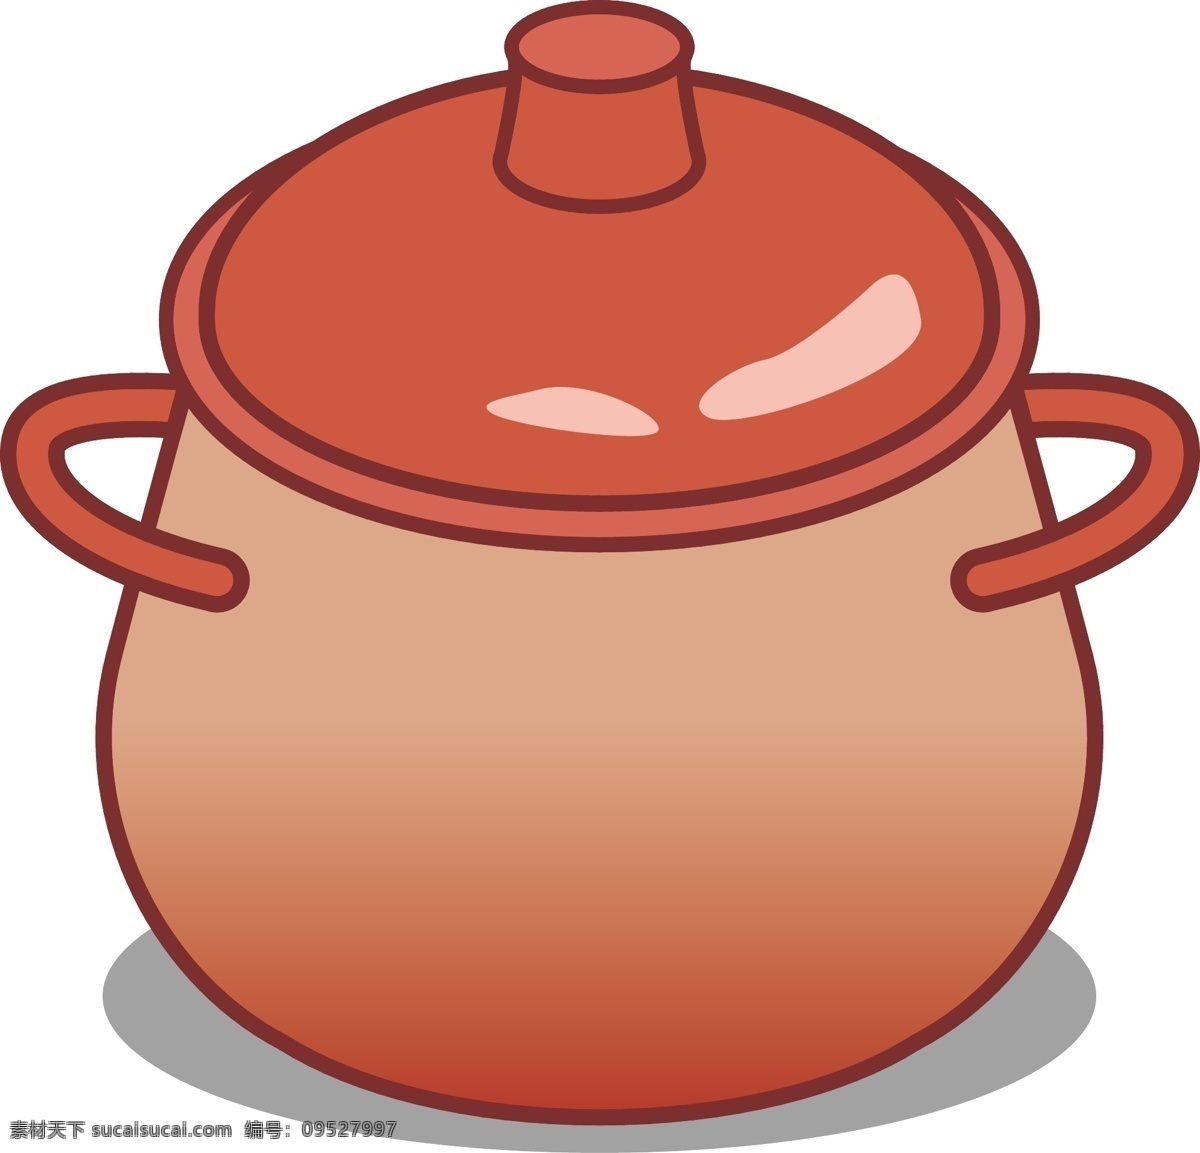 陶瓷锅食物 陶瓷锅 食物 红色 砖红色 陶瓷 锅子 厨房